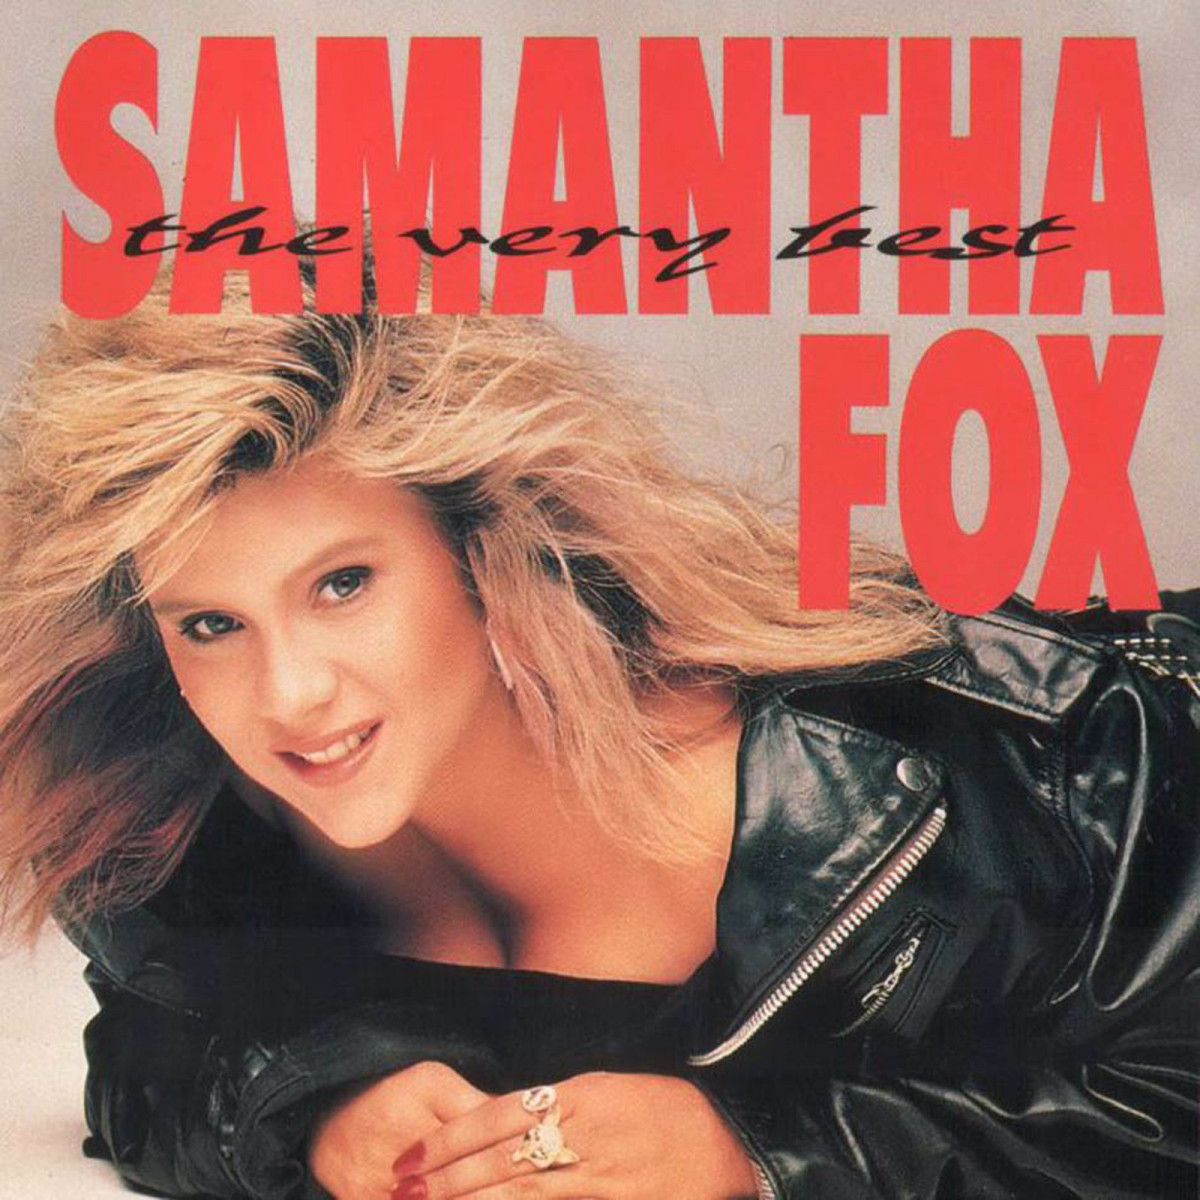 Samantha fox